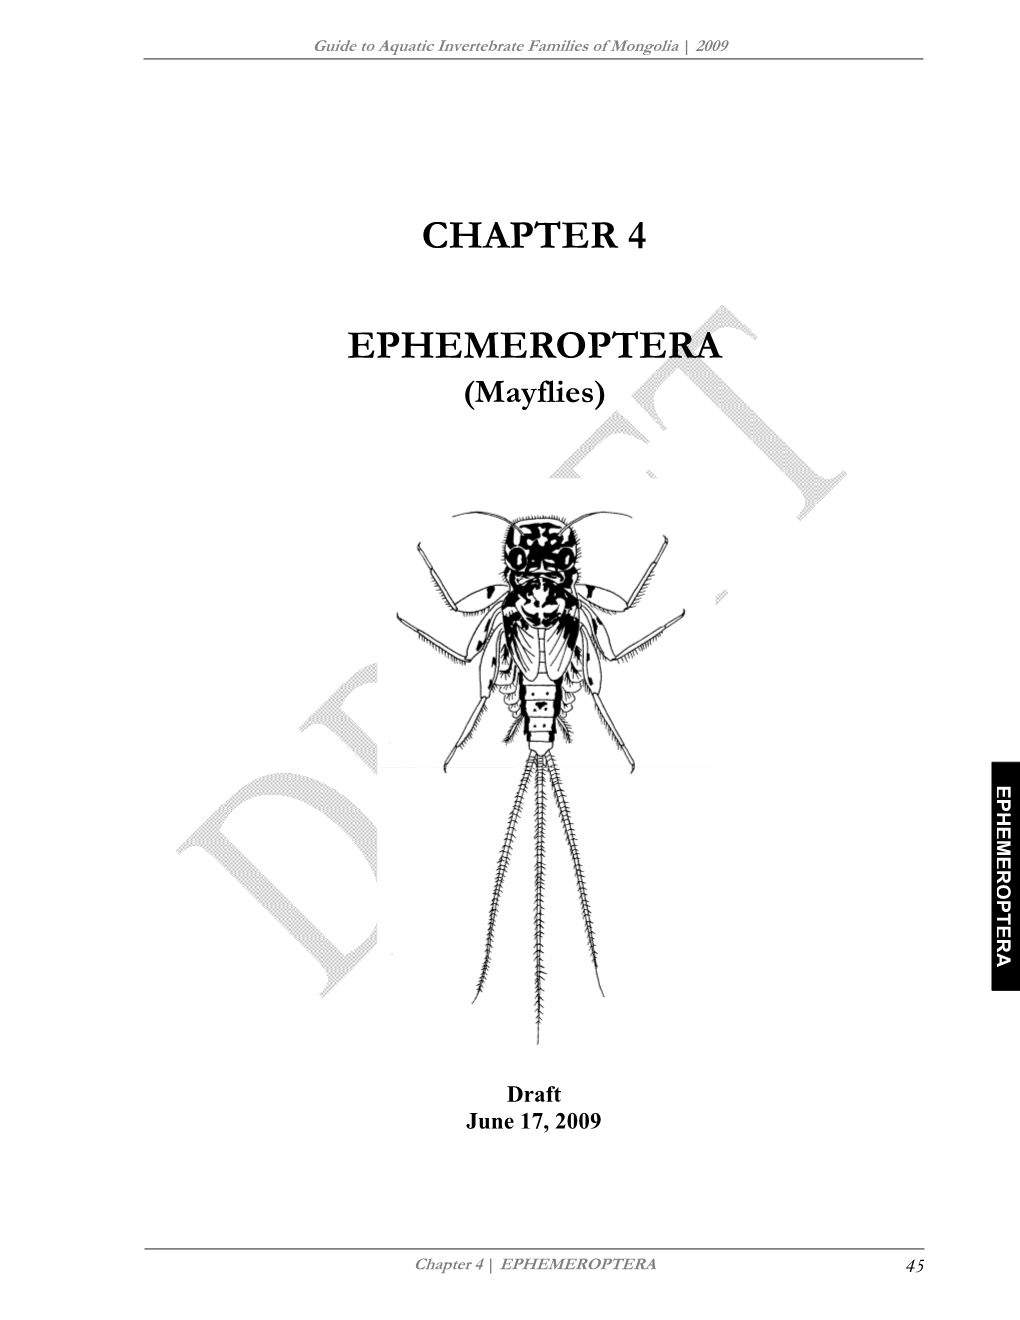 CHAPTER 4: EPHEMEROPTERA (Mayflies)